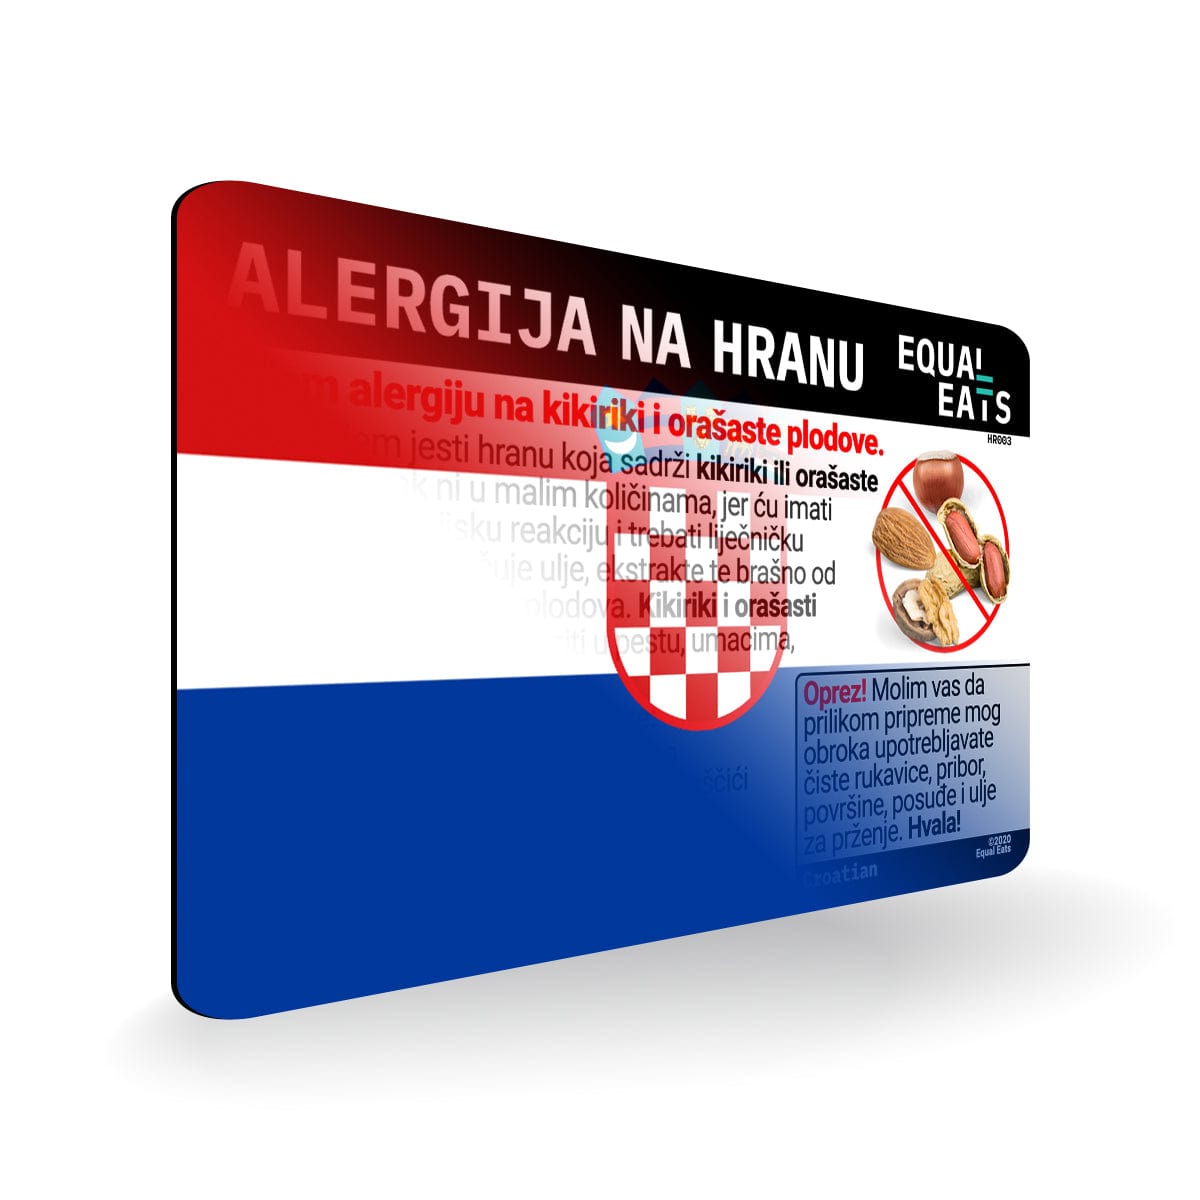 Peanut and Tree Nut Allergy in Croatian. Peanut and Tree Nut Allergy Card for Croatia Travel